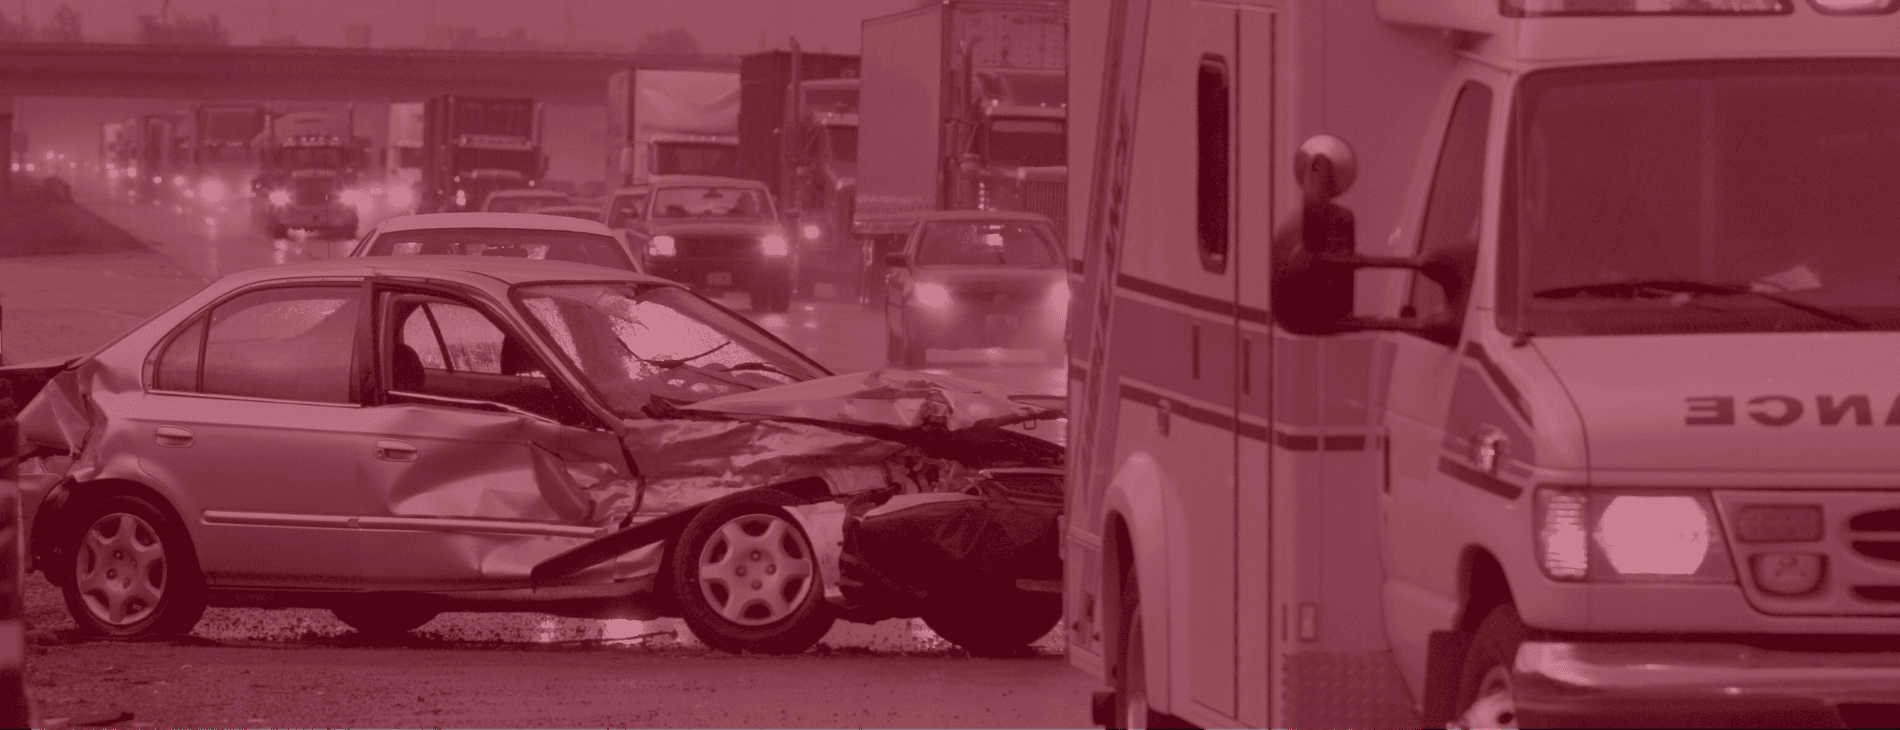 Otay Mesa car crash